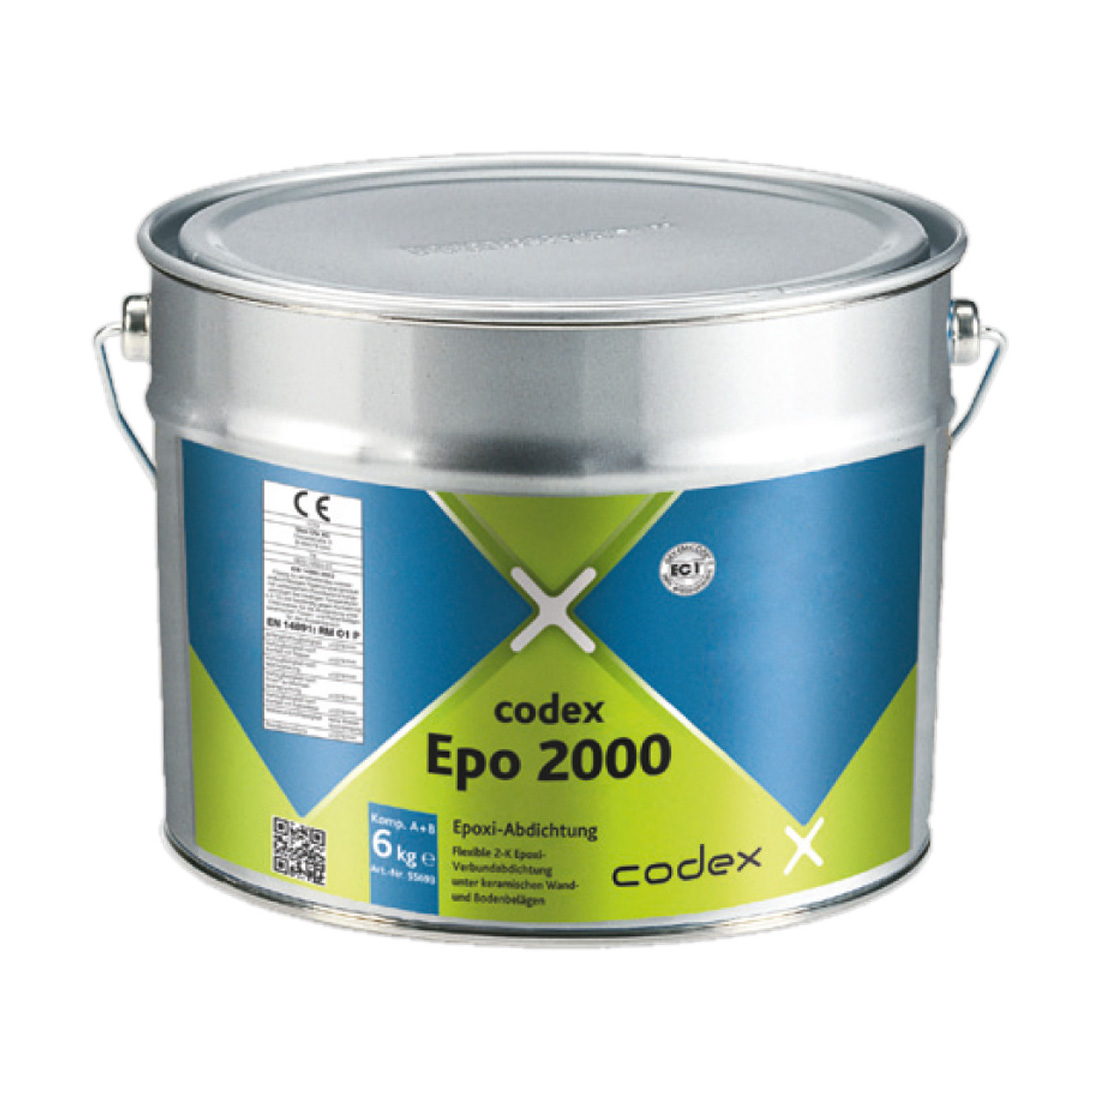 codex Epo 2000 Reaktiv-Abdichtung 6kg